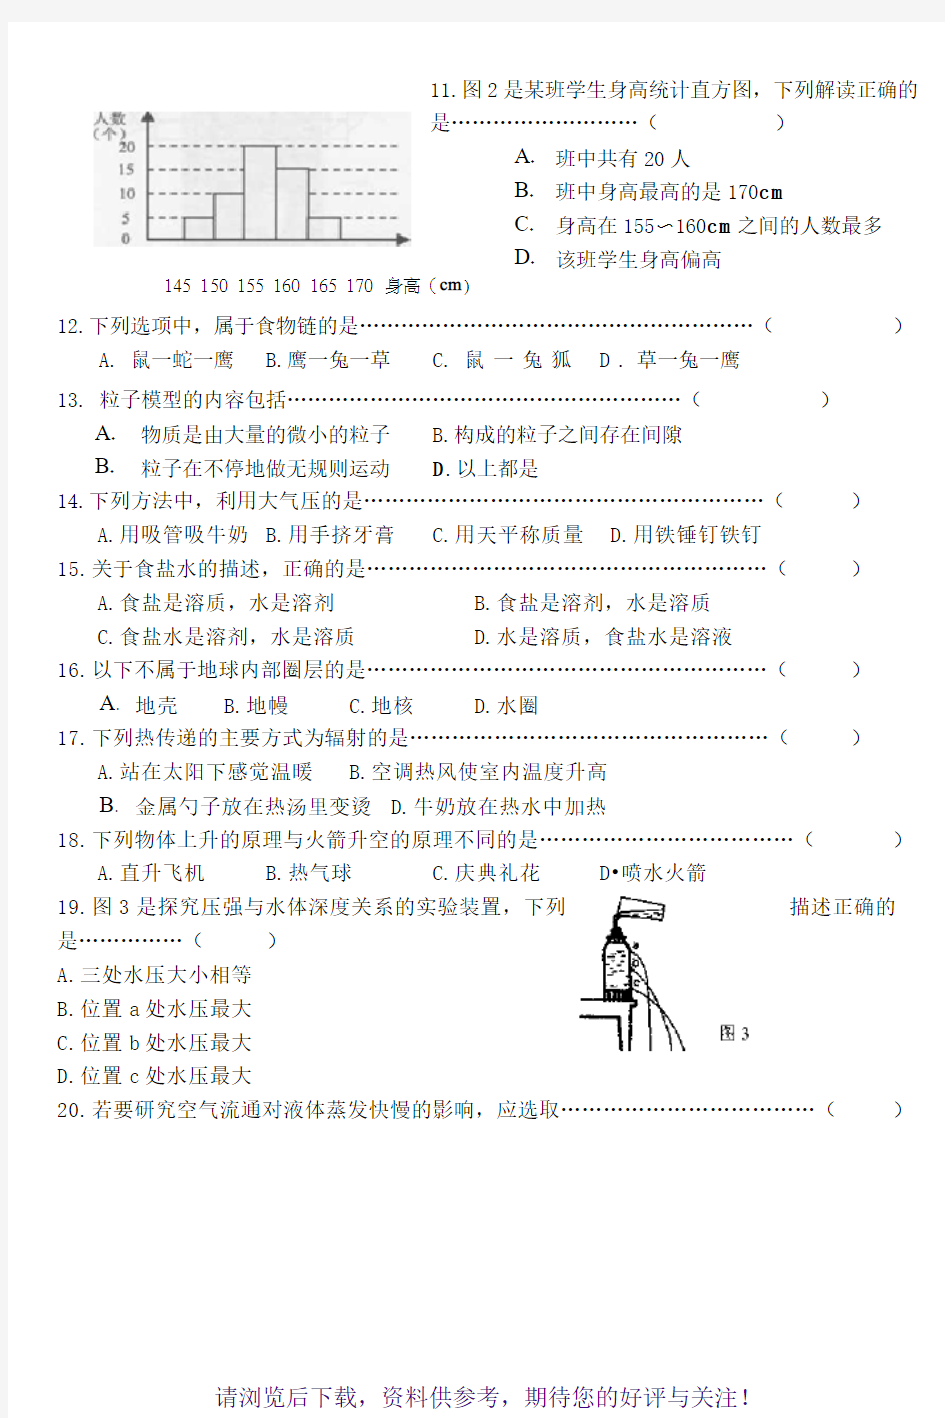 2016年上海市初中学生科学学业考试试卷